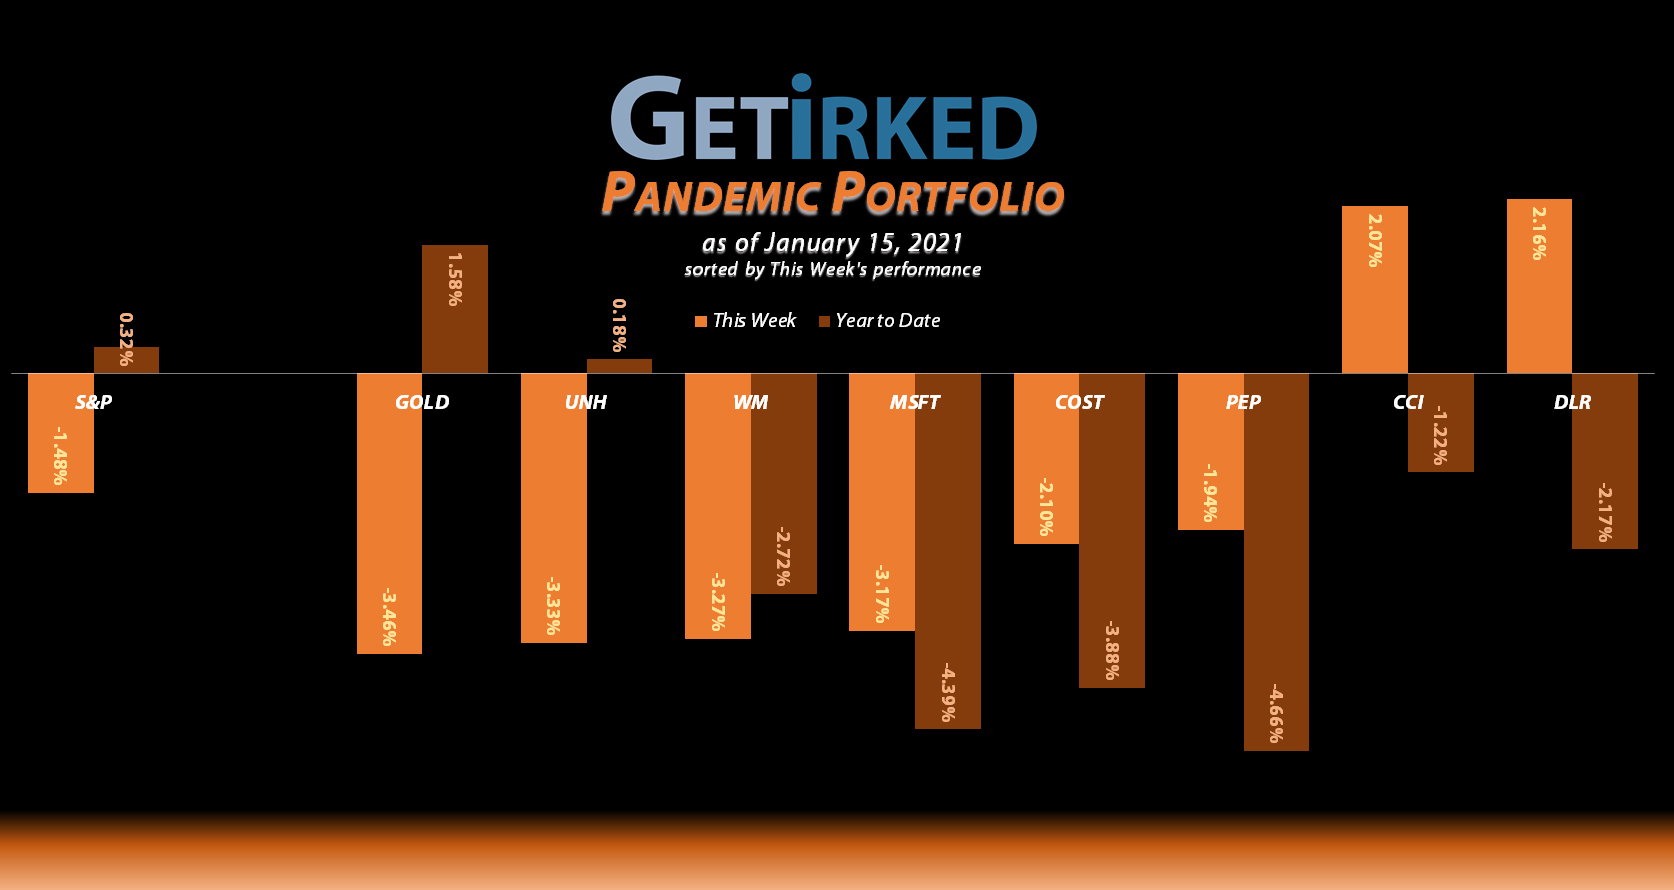 Get Irked - Pandemic Portfolio - January 15, 2021